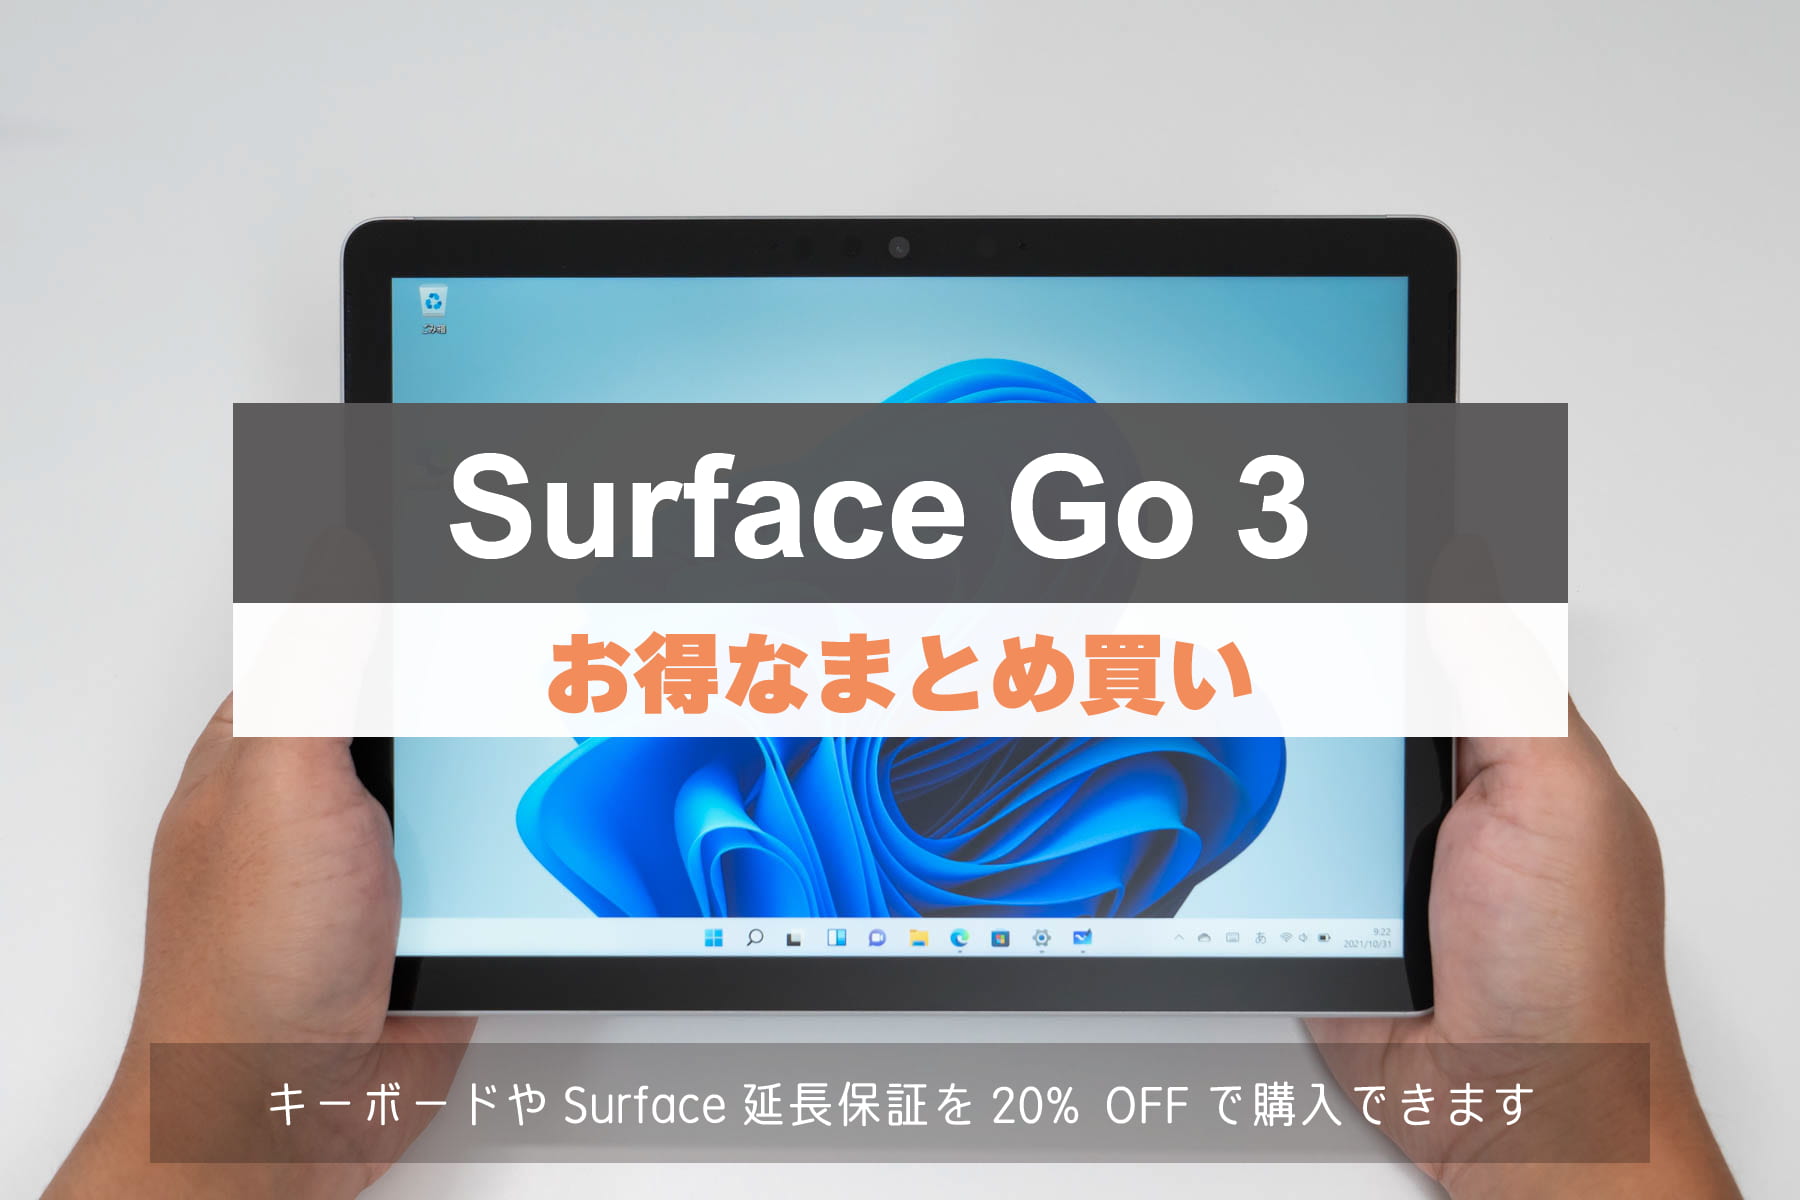 Surface Go 3 セール情報「お得なまとめ買い」